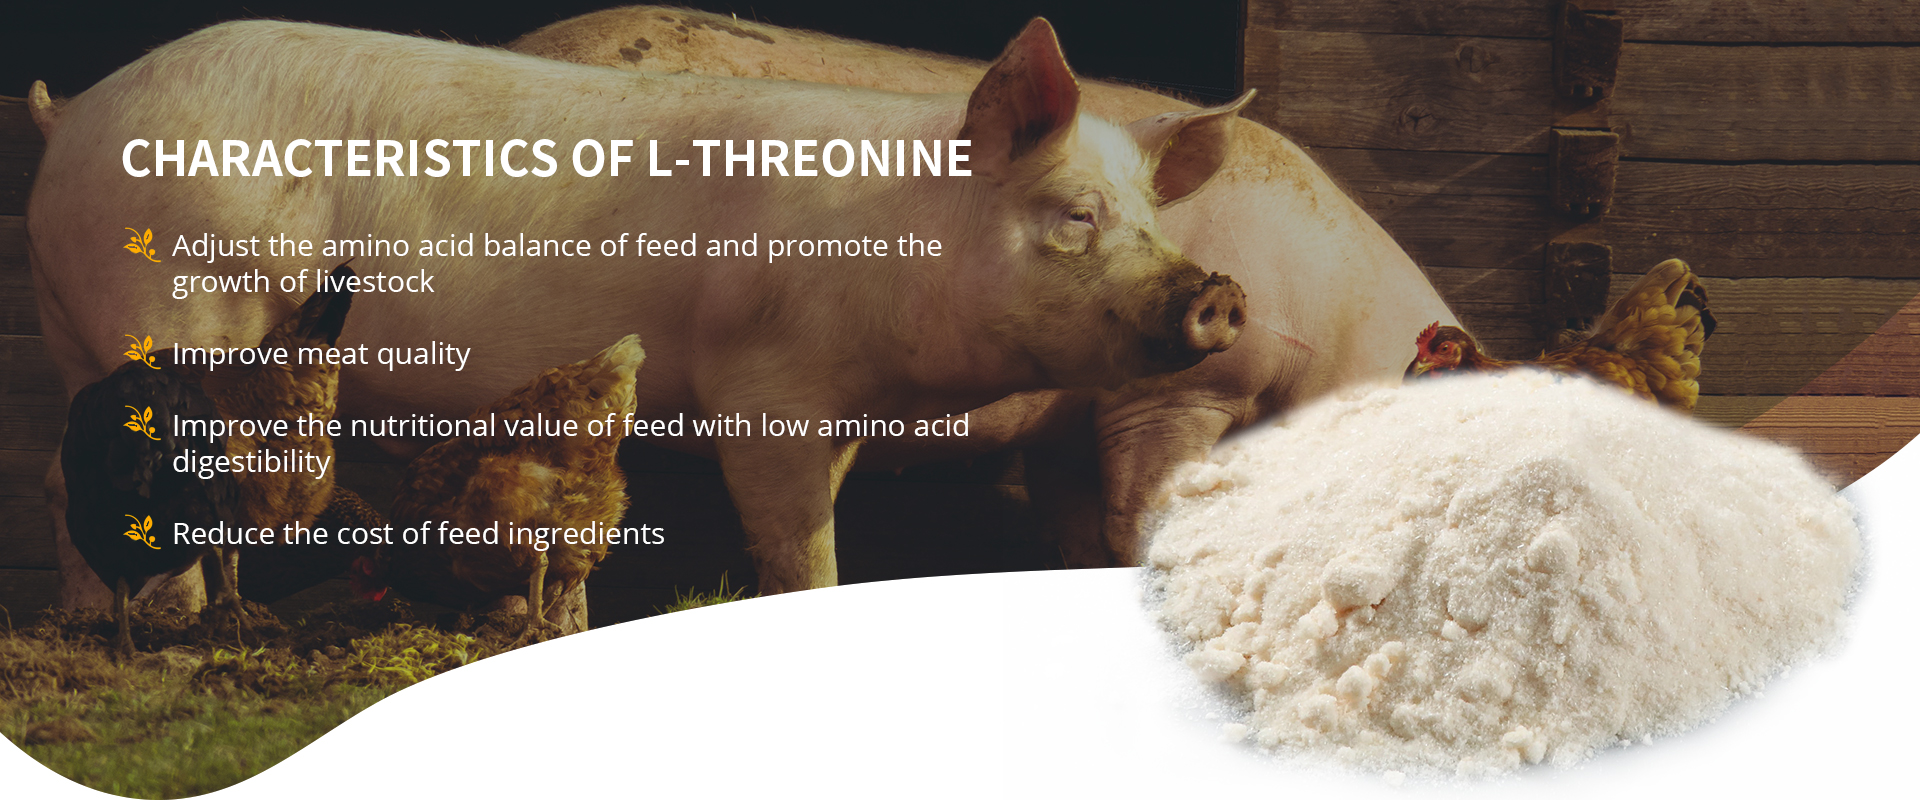 l threonine characteristics